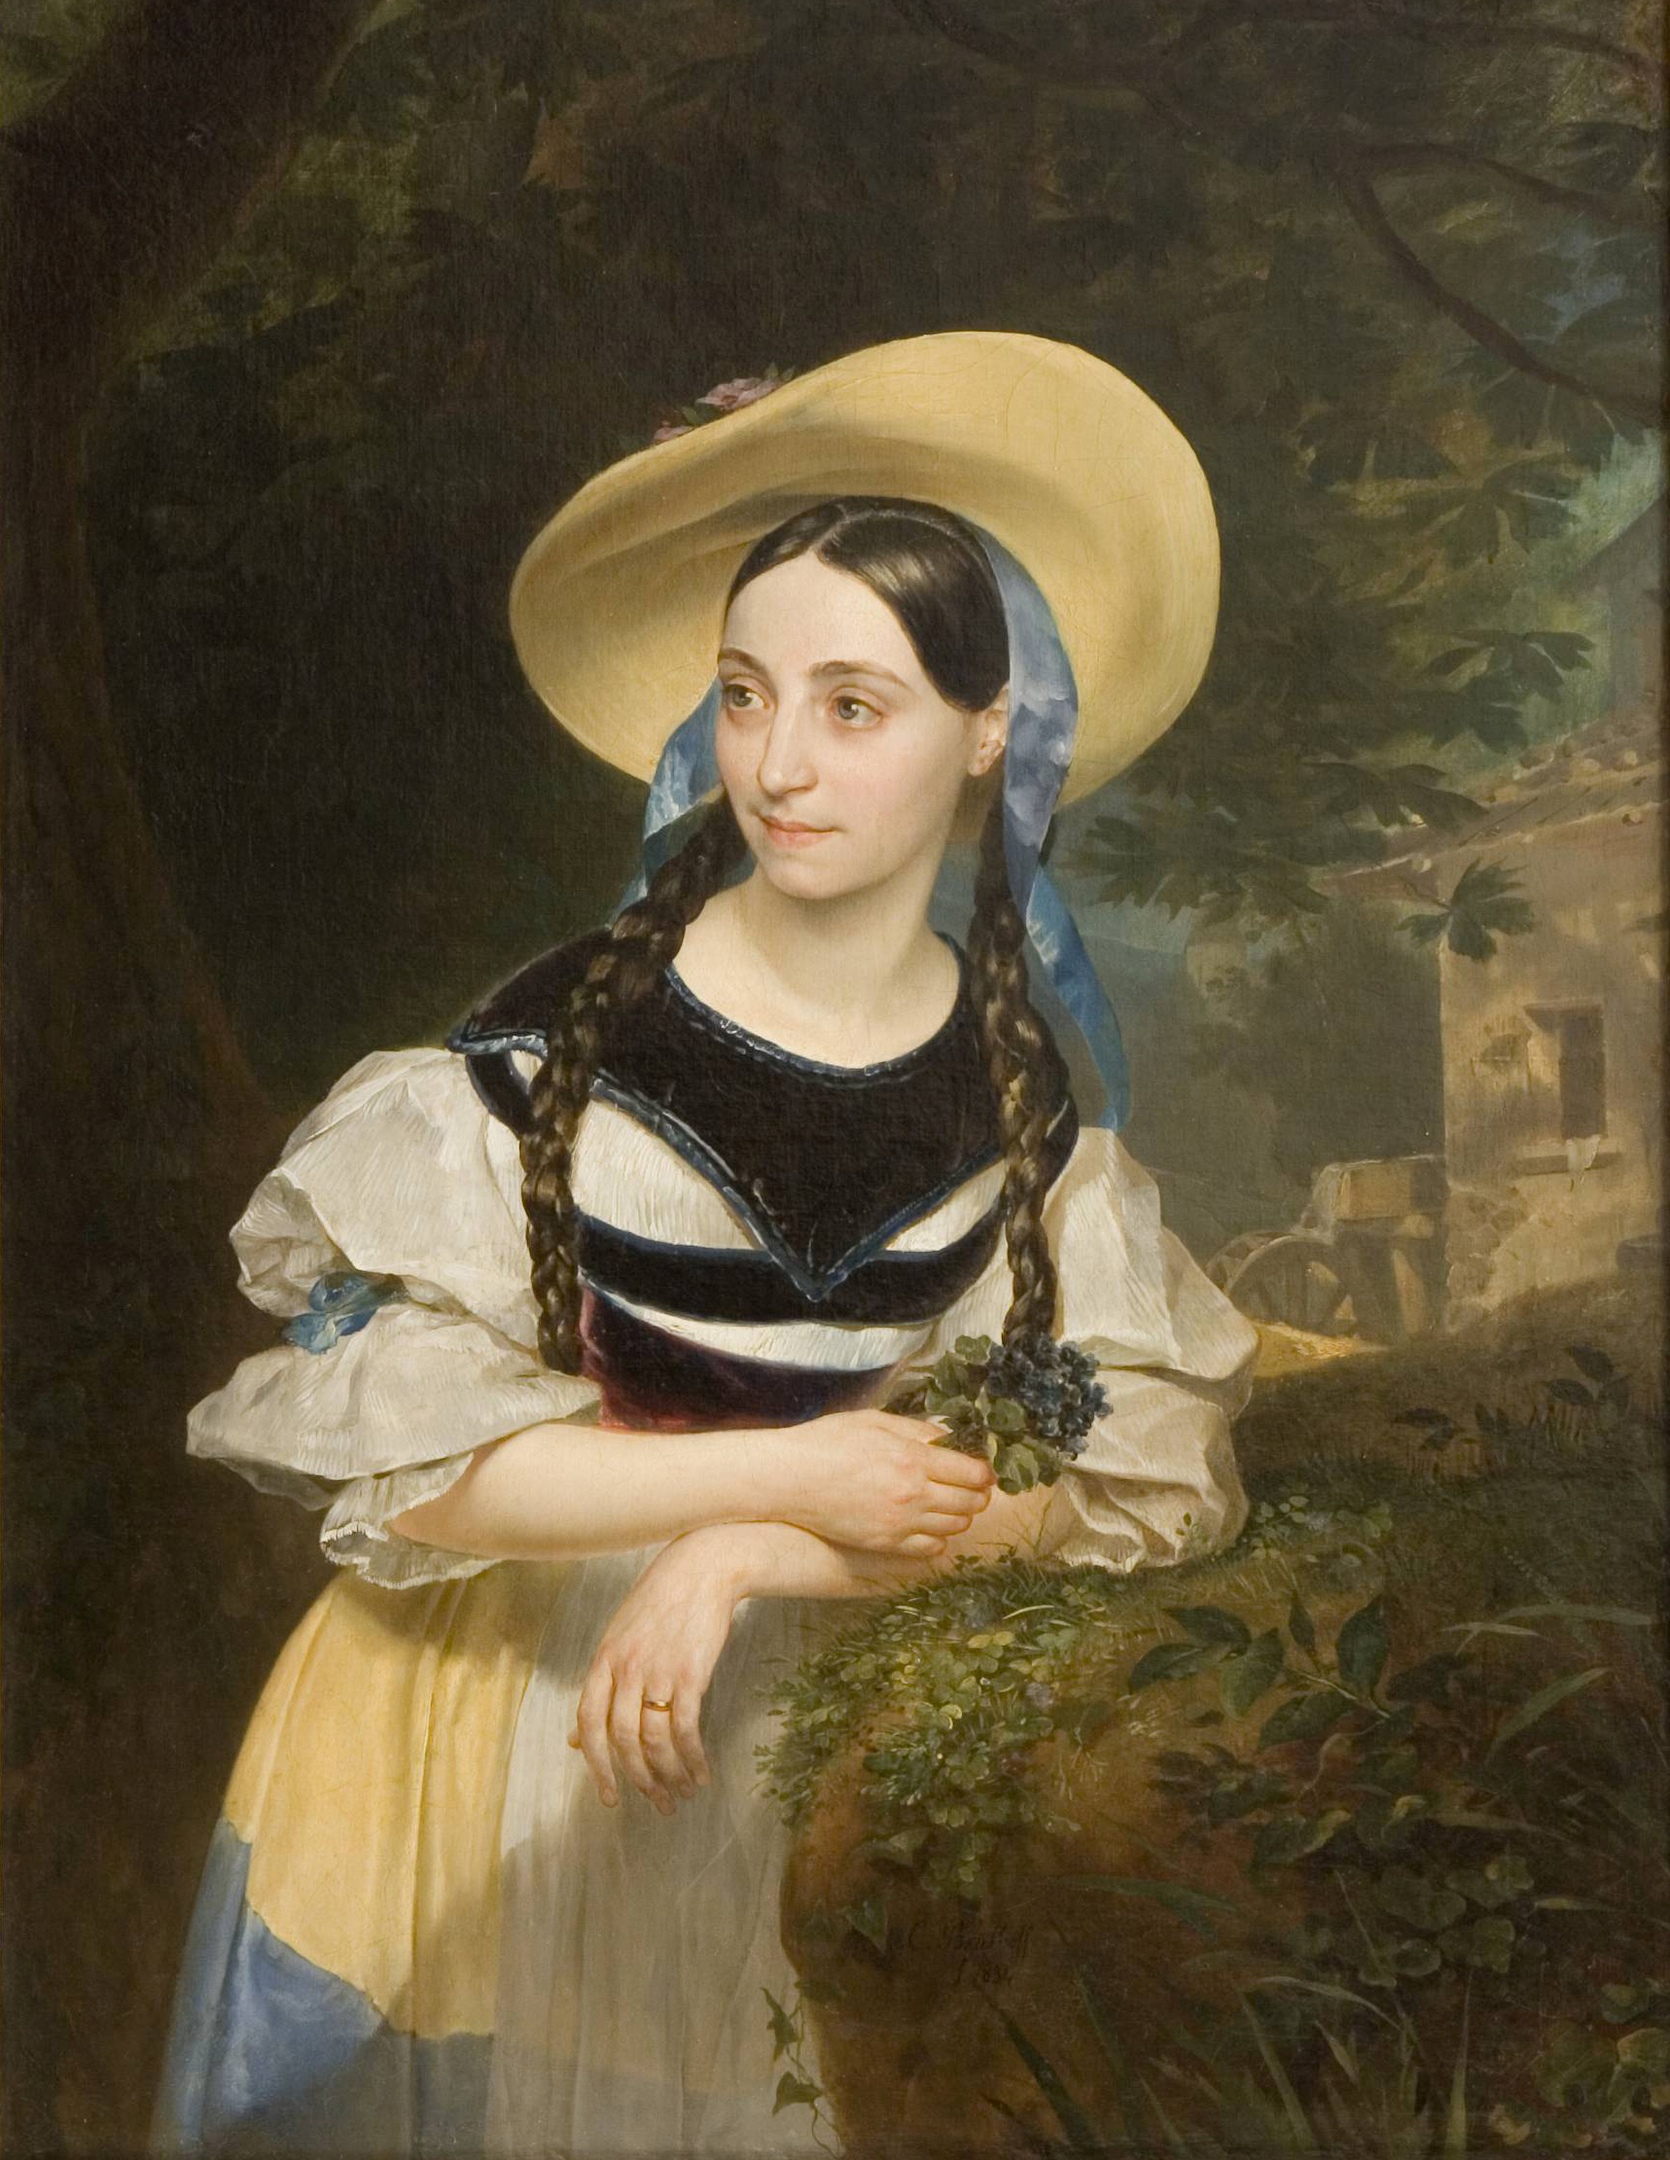 アミーナとしてのファニー・タッキナルディ＝ペルジアーニの肖像 by Karl Bryullov - 1834年 